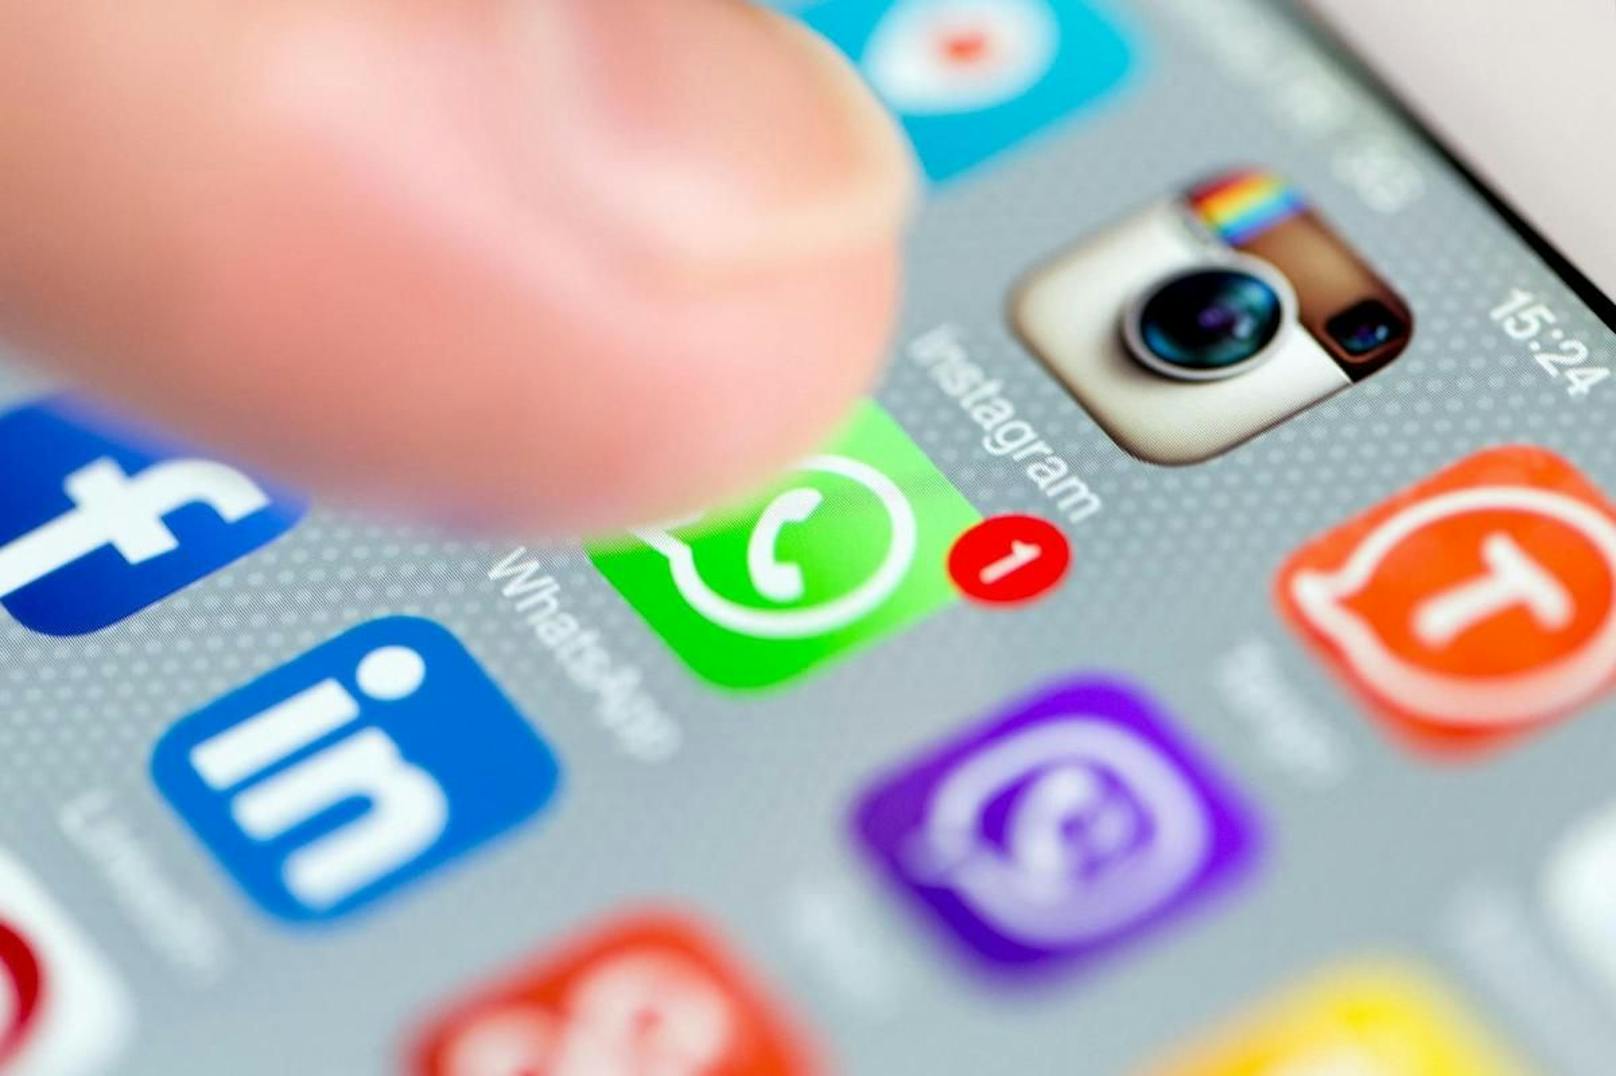 Anfang Jahr wollte Whatsapp alle Nutzerinnen und Nutzer zwingen, neuen AGBs betreffend die Privatsphäre anzunehmen.